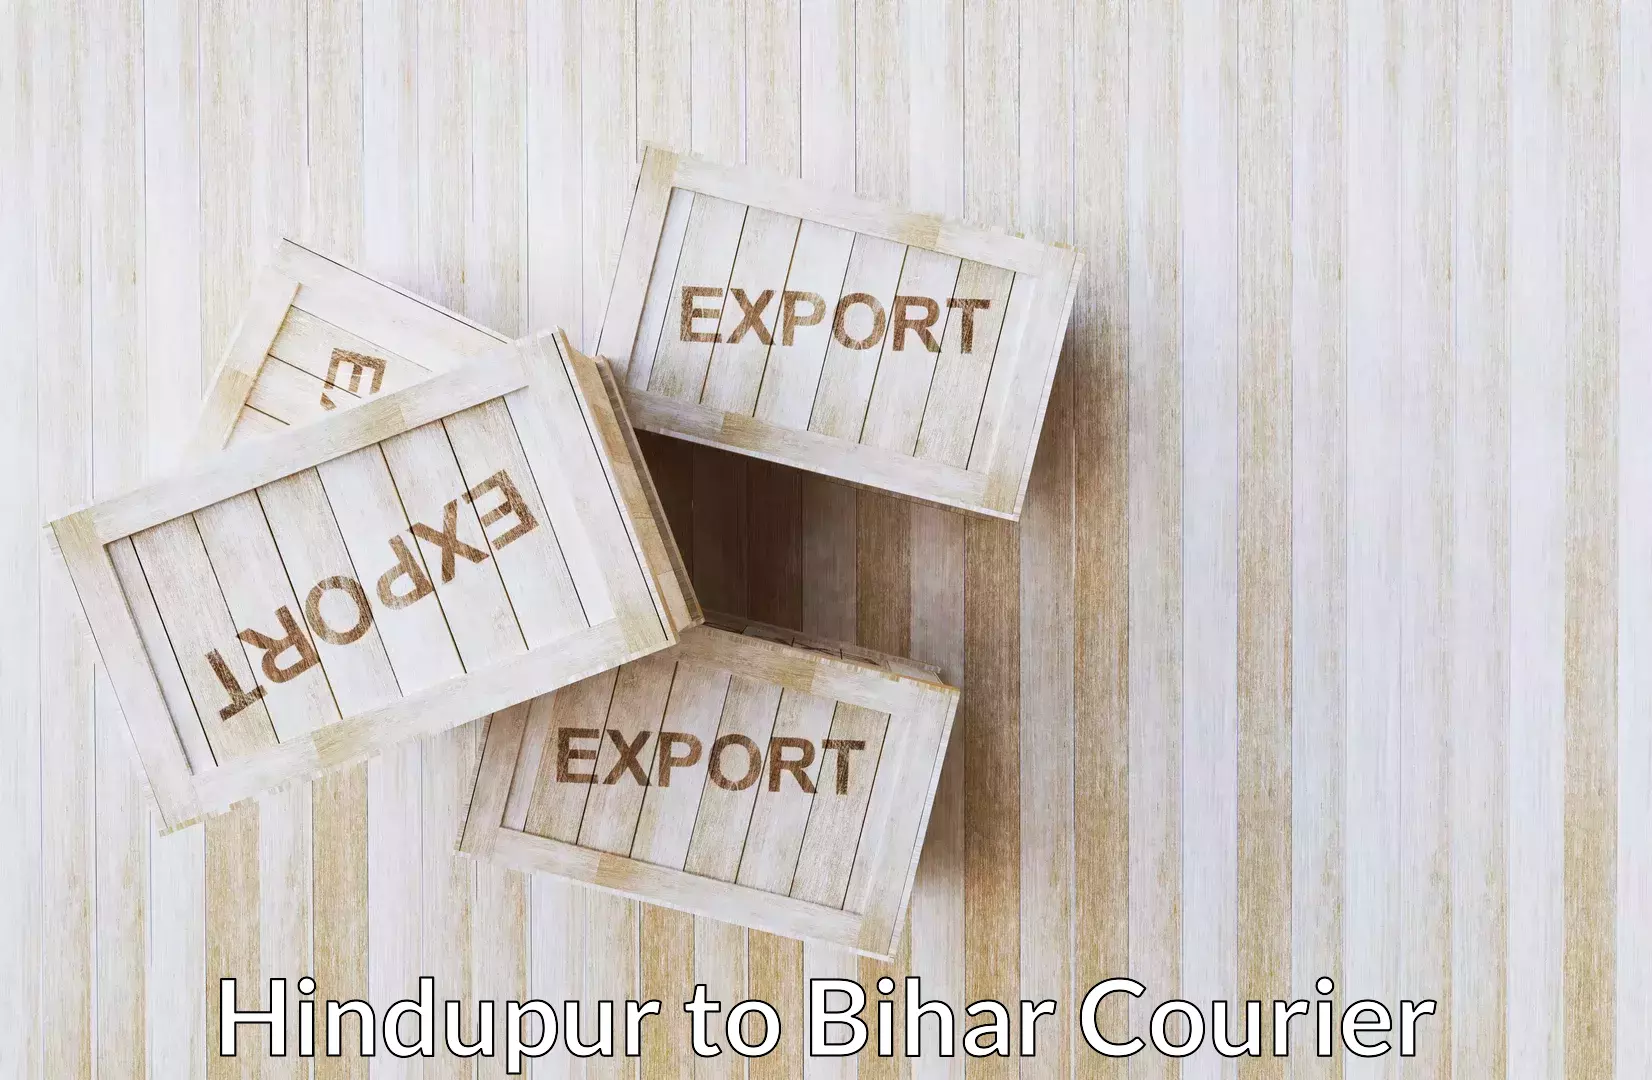 Furniture transport experts Hindupur to Bihar